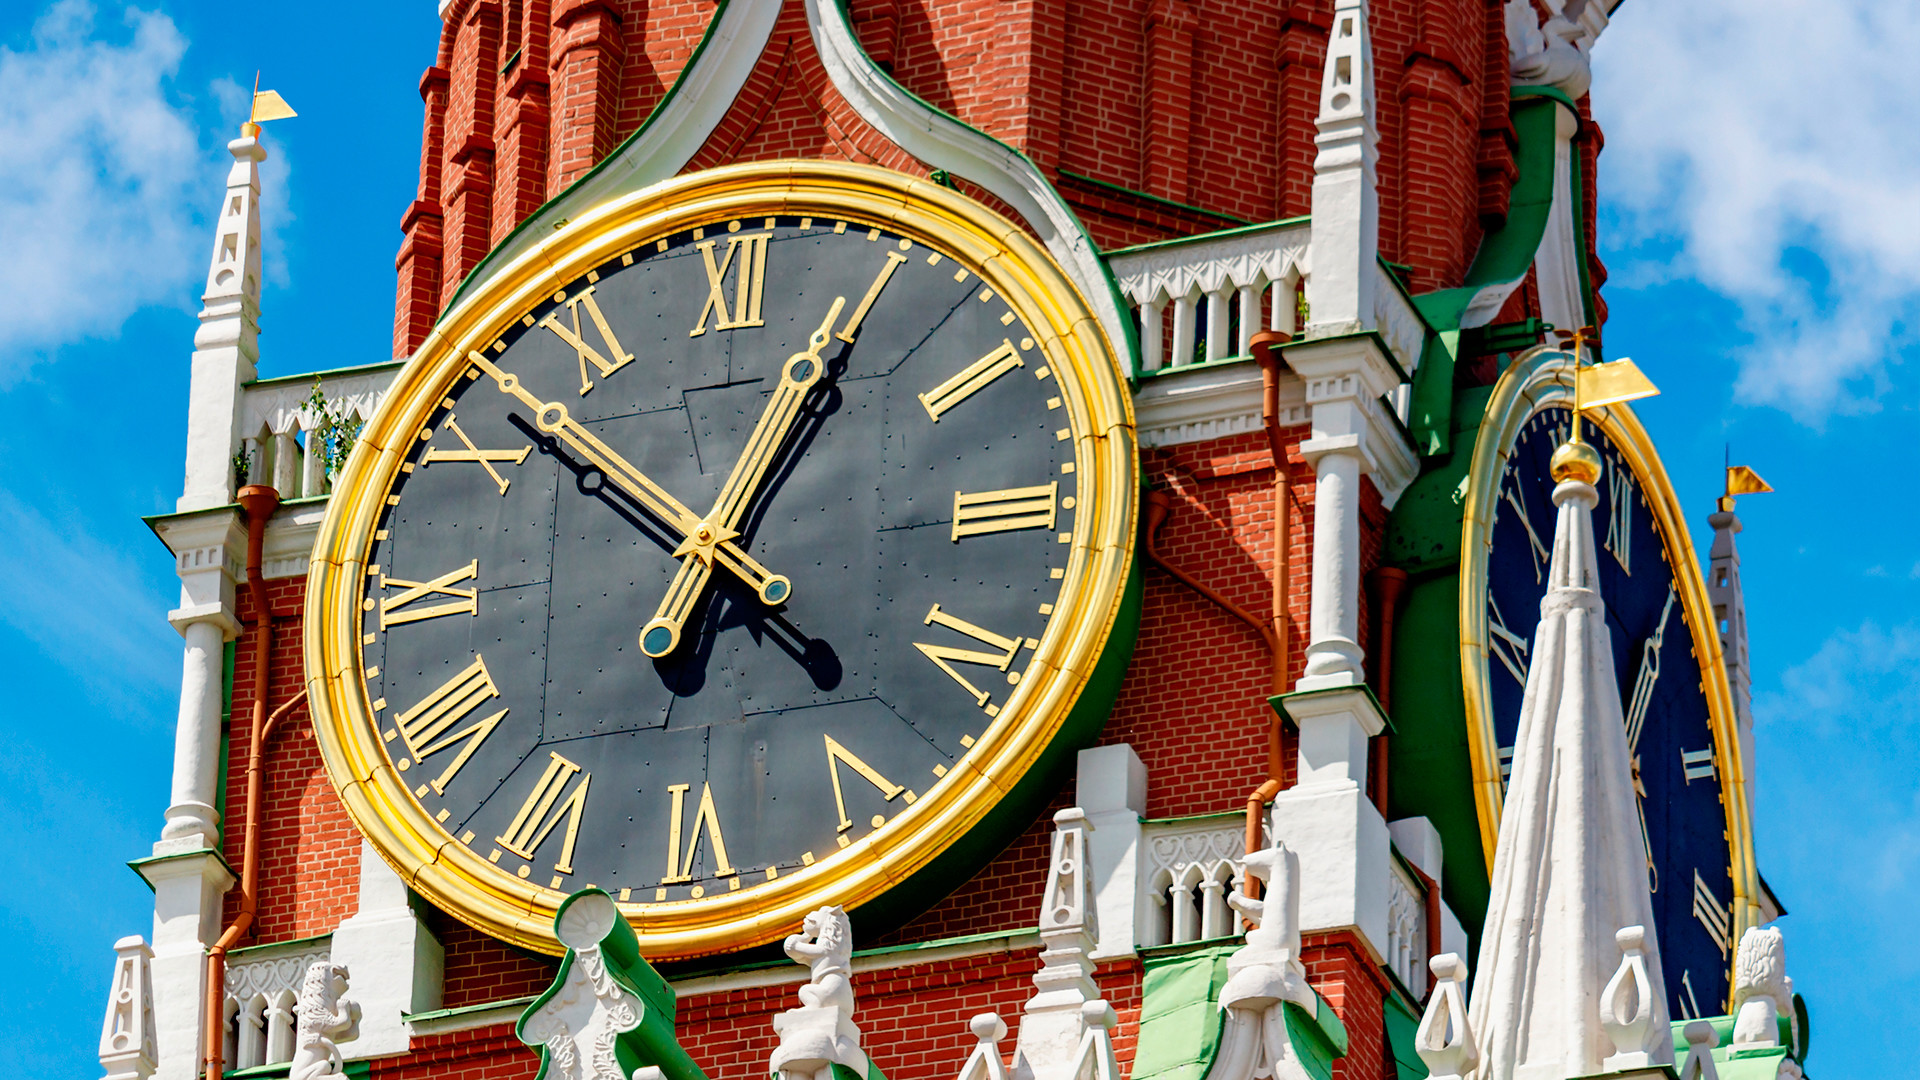 Кремль часы москва